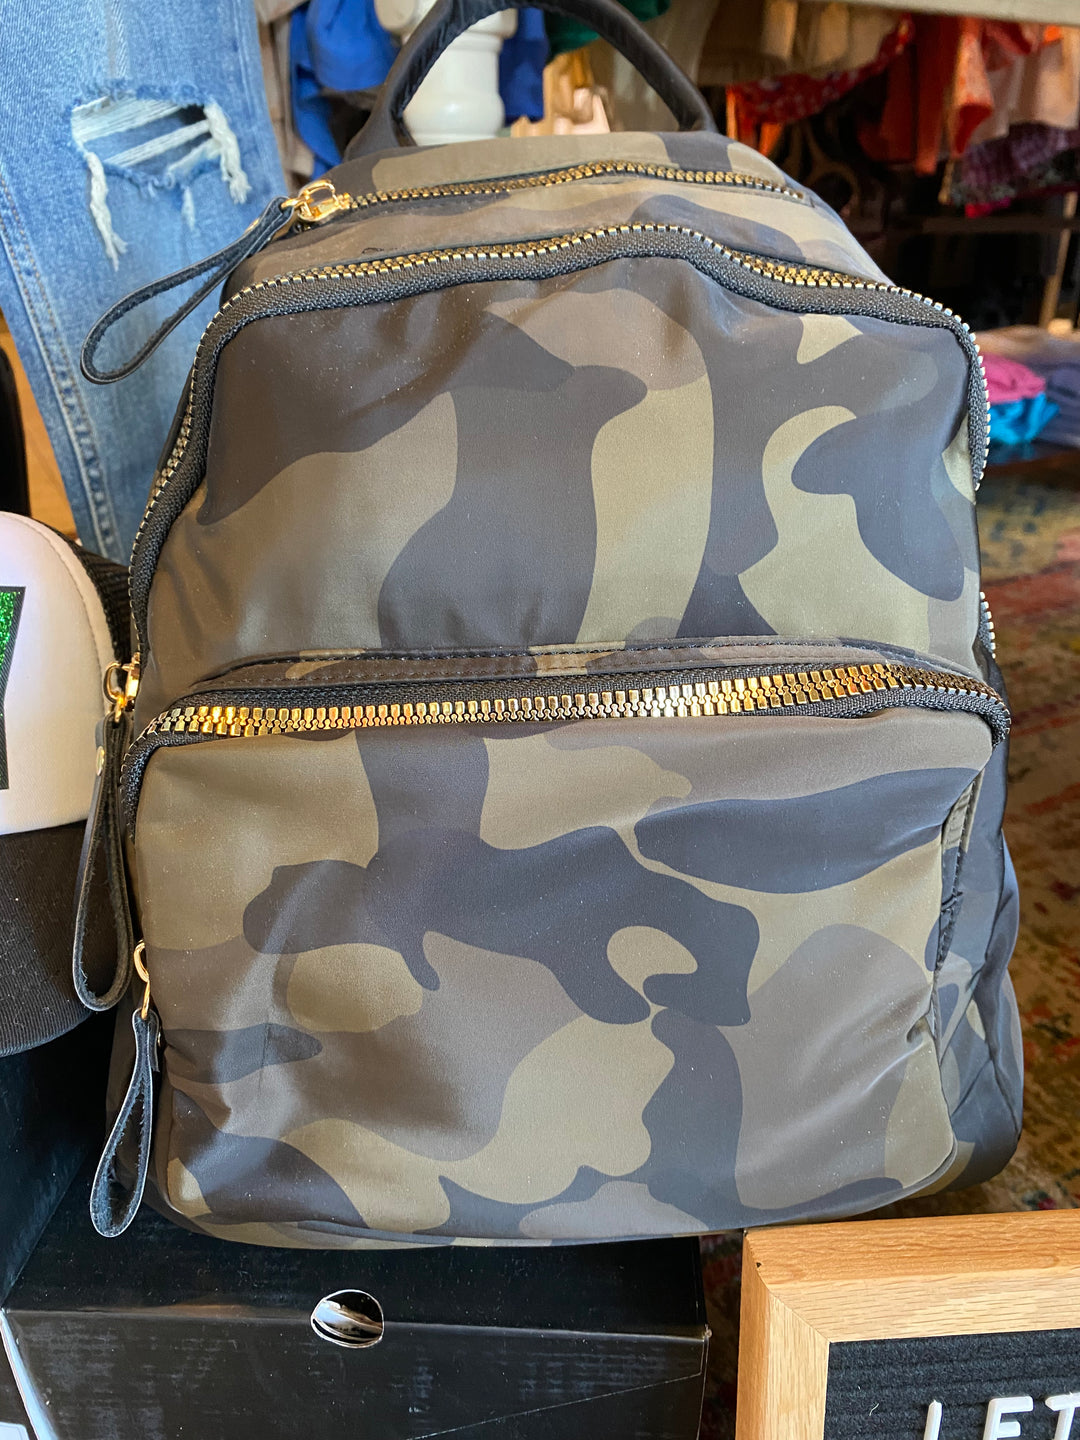 Blair Backpack